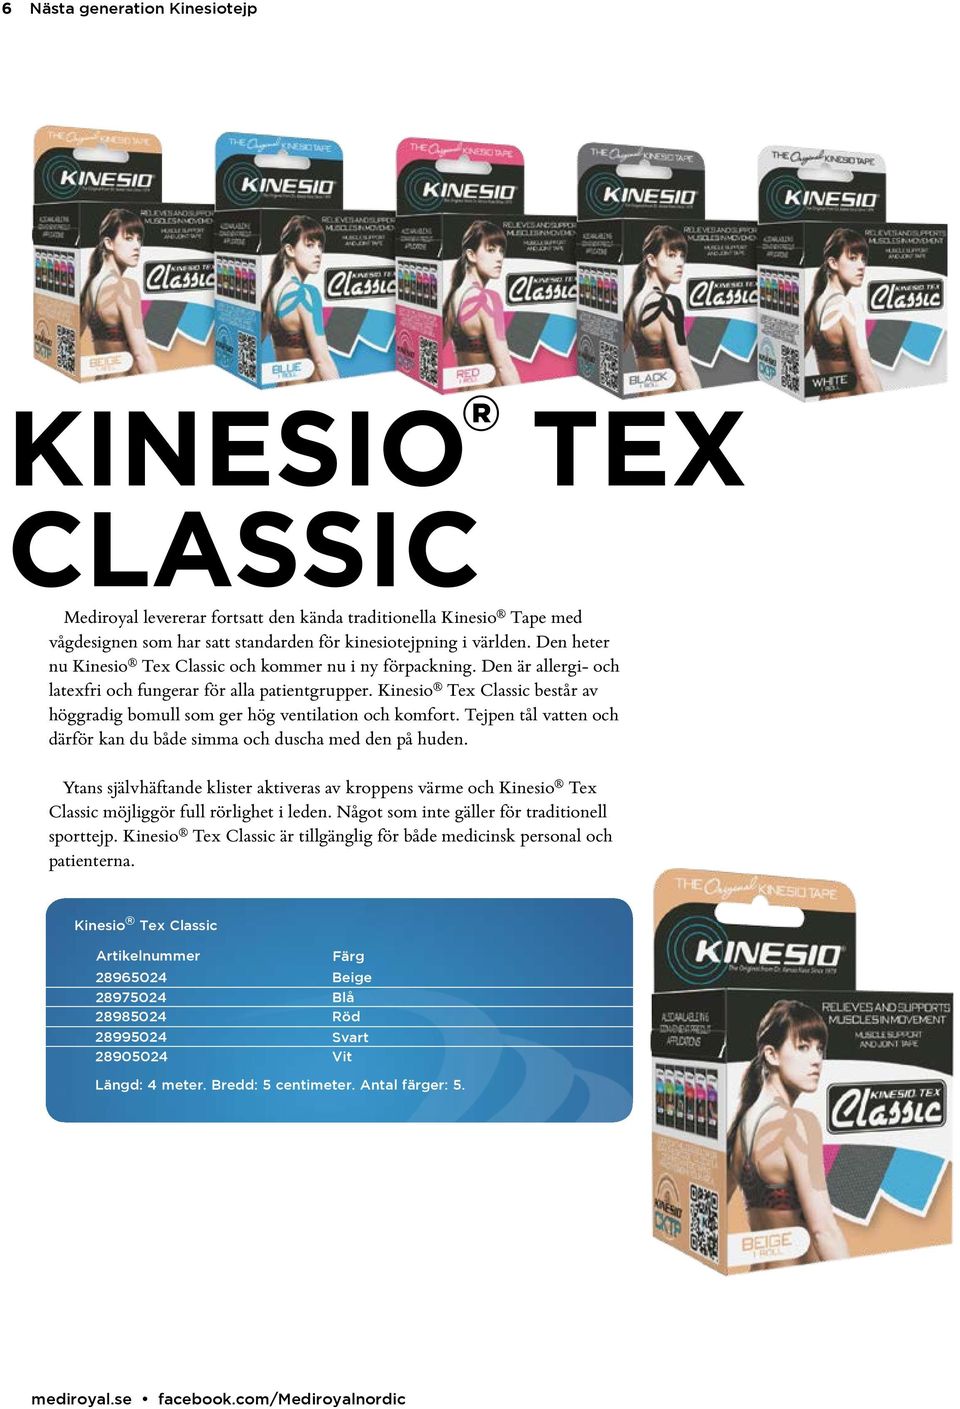 Kinesio Tex Classic består av höggradig bomull som ger hög ventilation och komfort. Tejpen tål vatten och därför kan du både simma och duscha med den på huden.